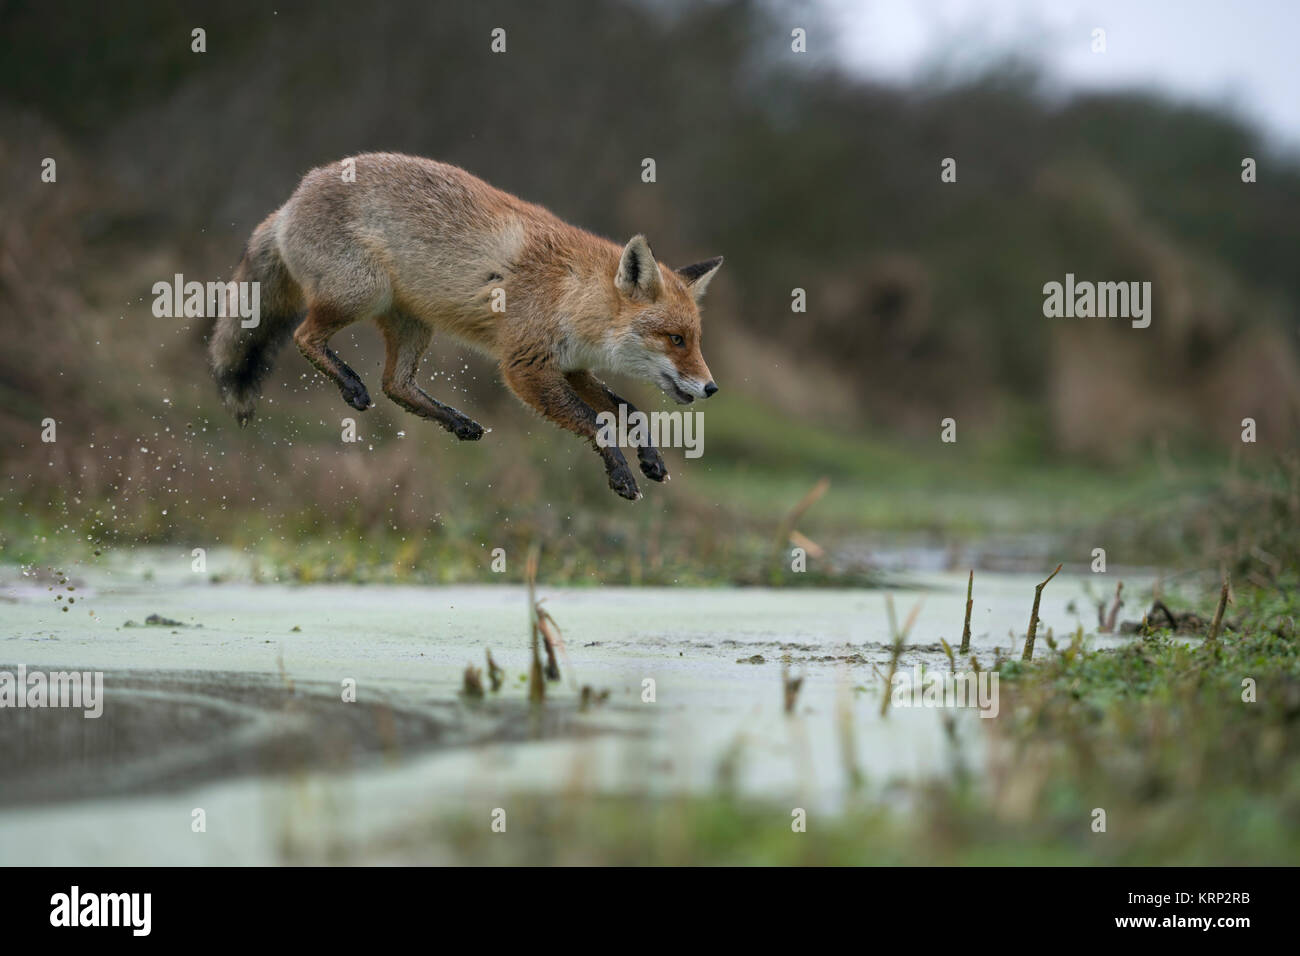 Red Fox / Rotfuchs ( Vulpes vulpes ), adulti in winterfur, saltando su un piccolo fiume in una palude, lungi jump, sembra divertente, wildife, l'Europa. Foto Stock